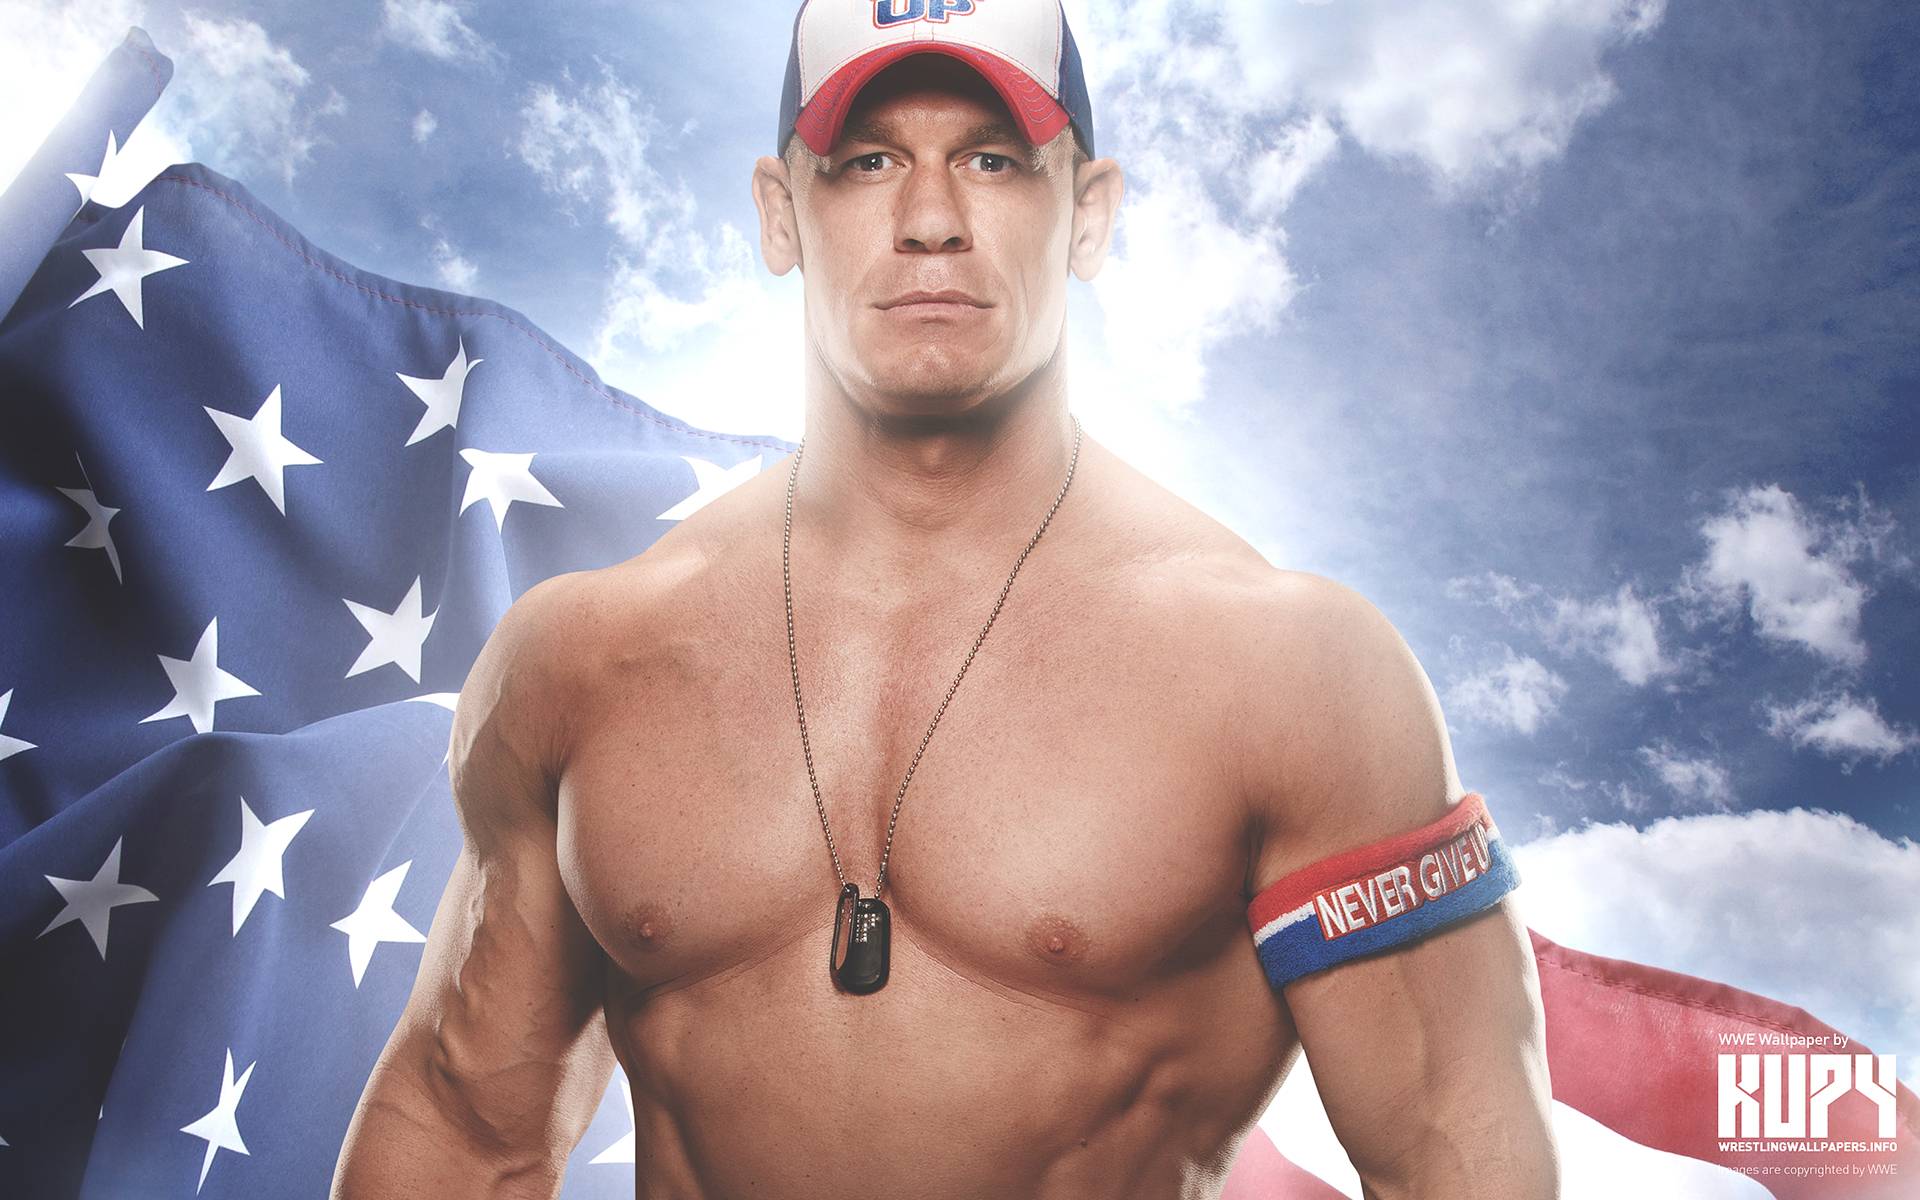 NEW John Cena 2016 wallpaper! Wrestling Wallpaper